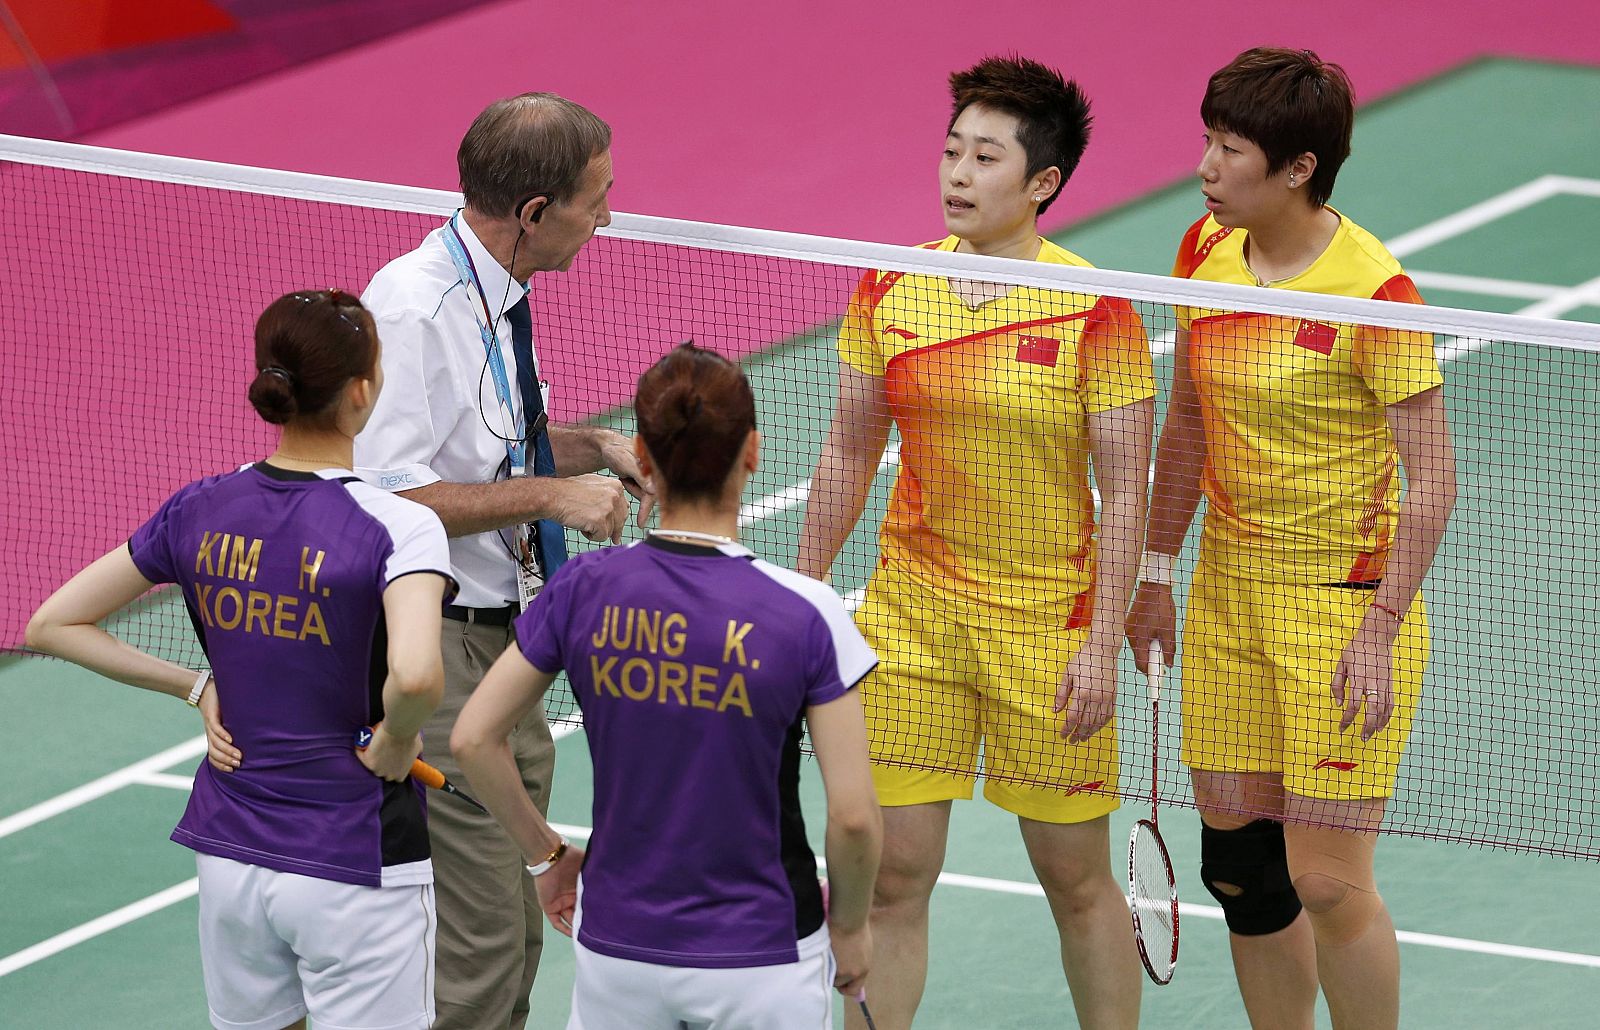 El árbitro del torneo se dirige a la pareja china de bádminton durante el partido por su comportamiento poco deportivo.mes at the Wembley Arena